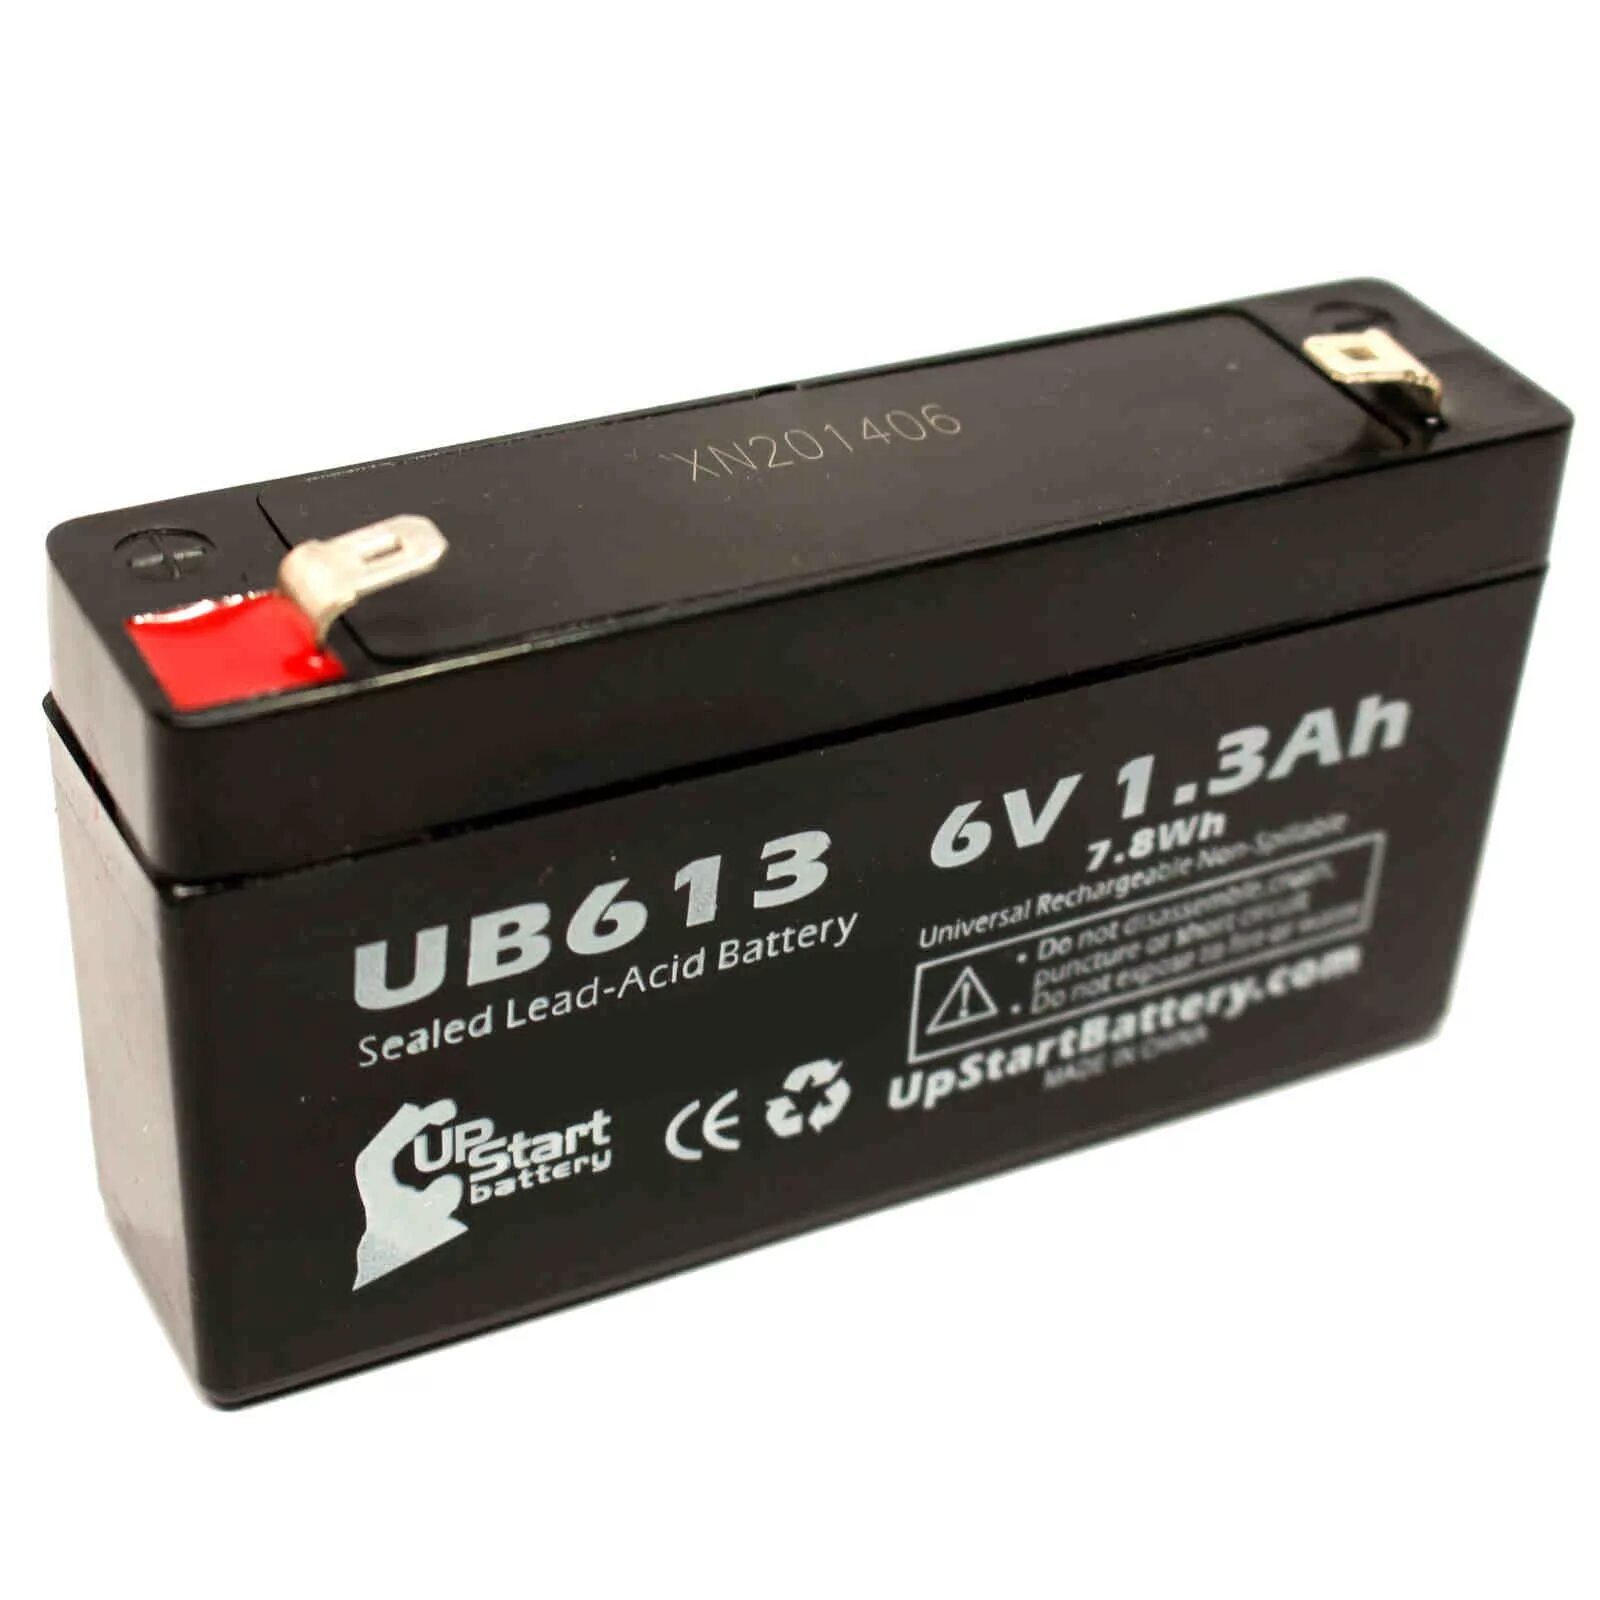 Sealed Rechargeable lead-acid Battery 6v. Аккумулятор Sealed Rechargeable lead-acid Battery 6v. Аккумулятор Leoch DJW 12-1.3. Leoch DJW 12-2,3 12v 2,3ah.